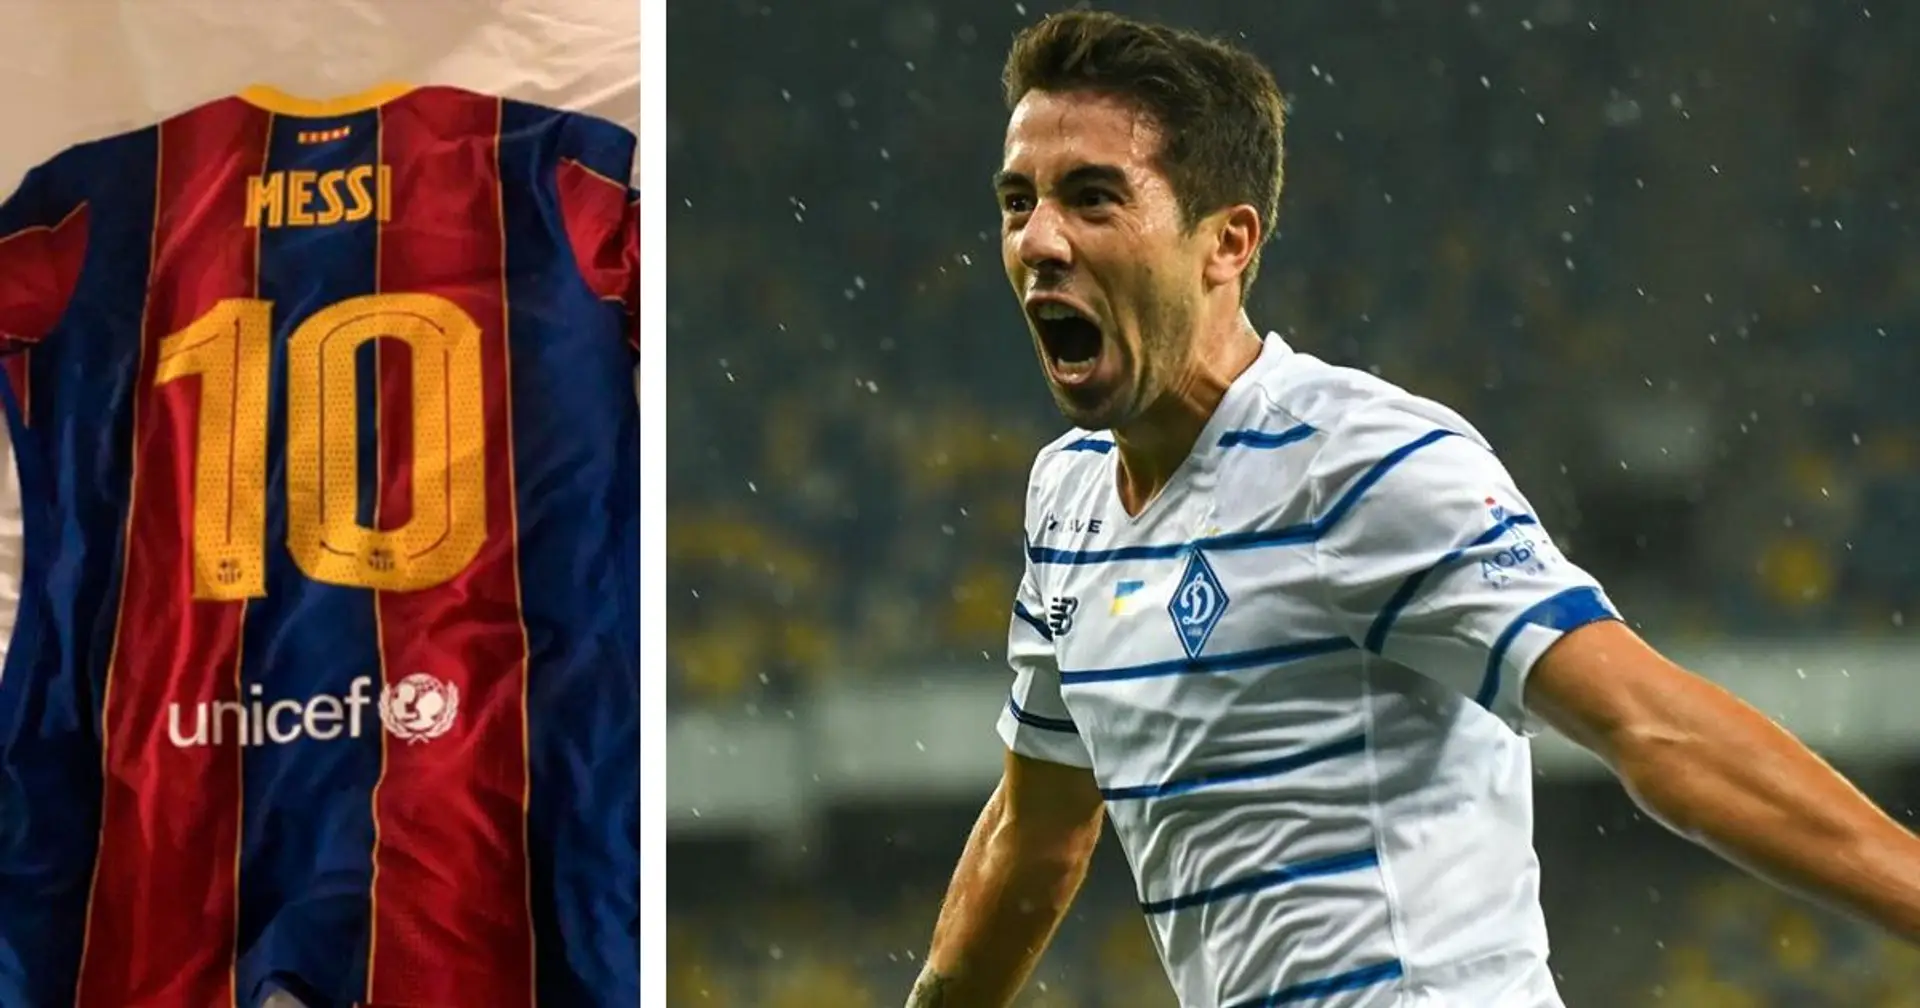 Dynamo Kyiv forward De Pena reveals how he got Messi's shirt through Luis Suarez links